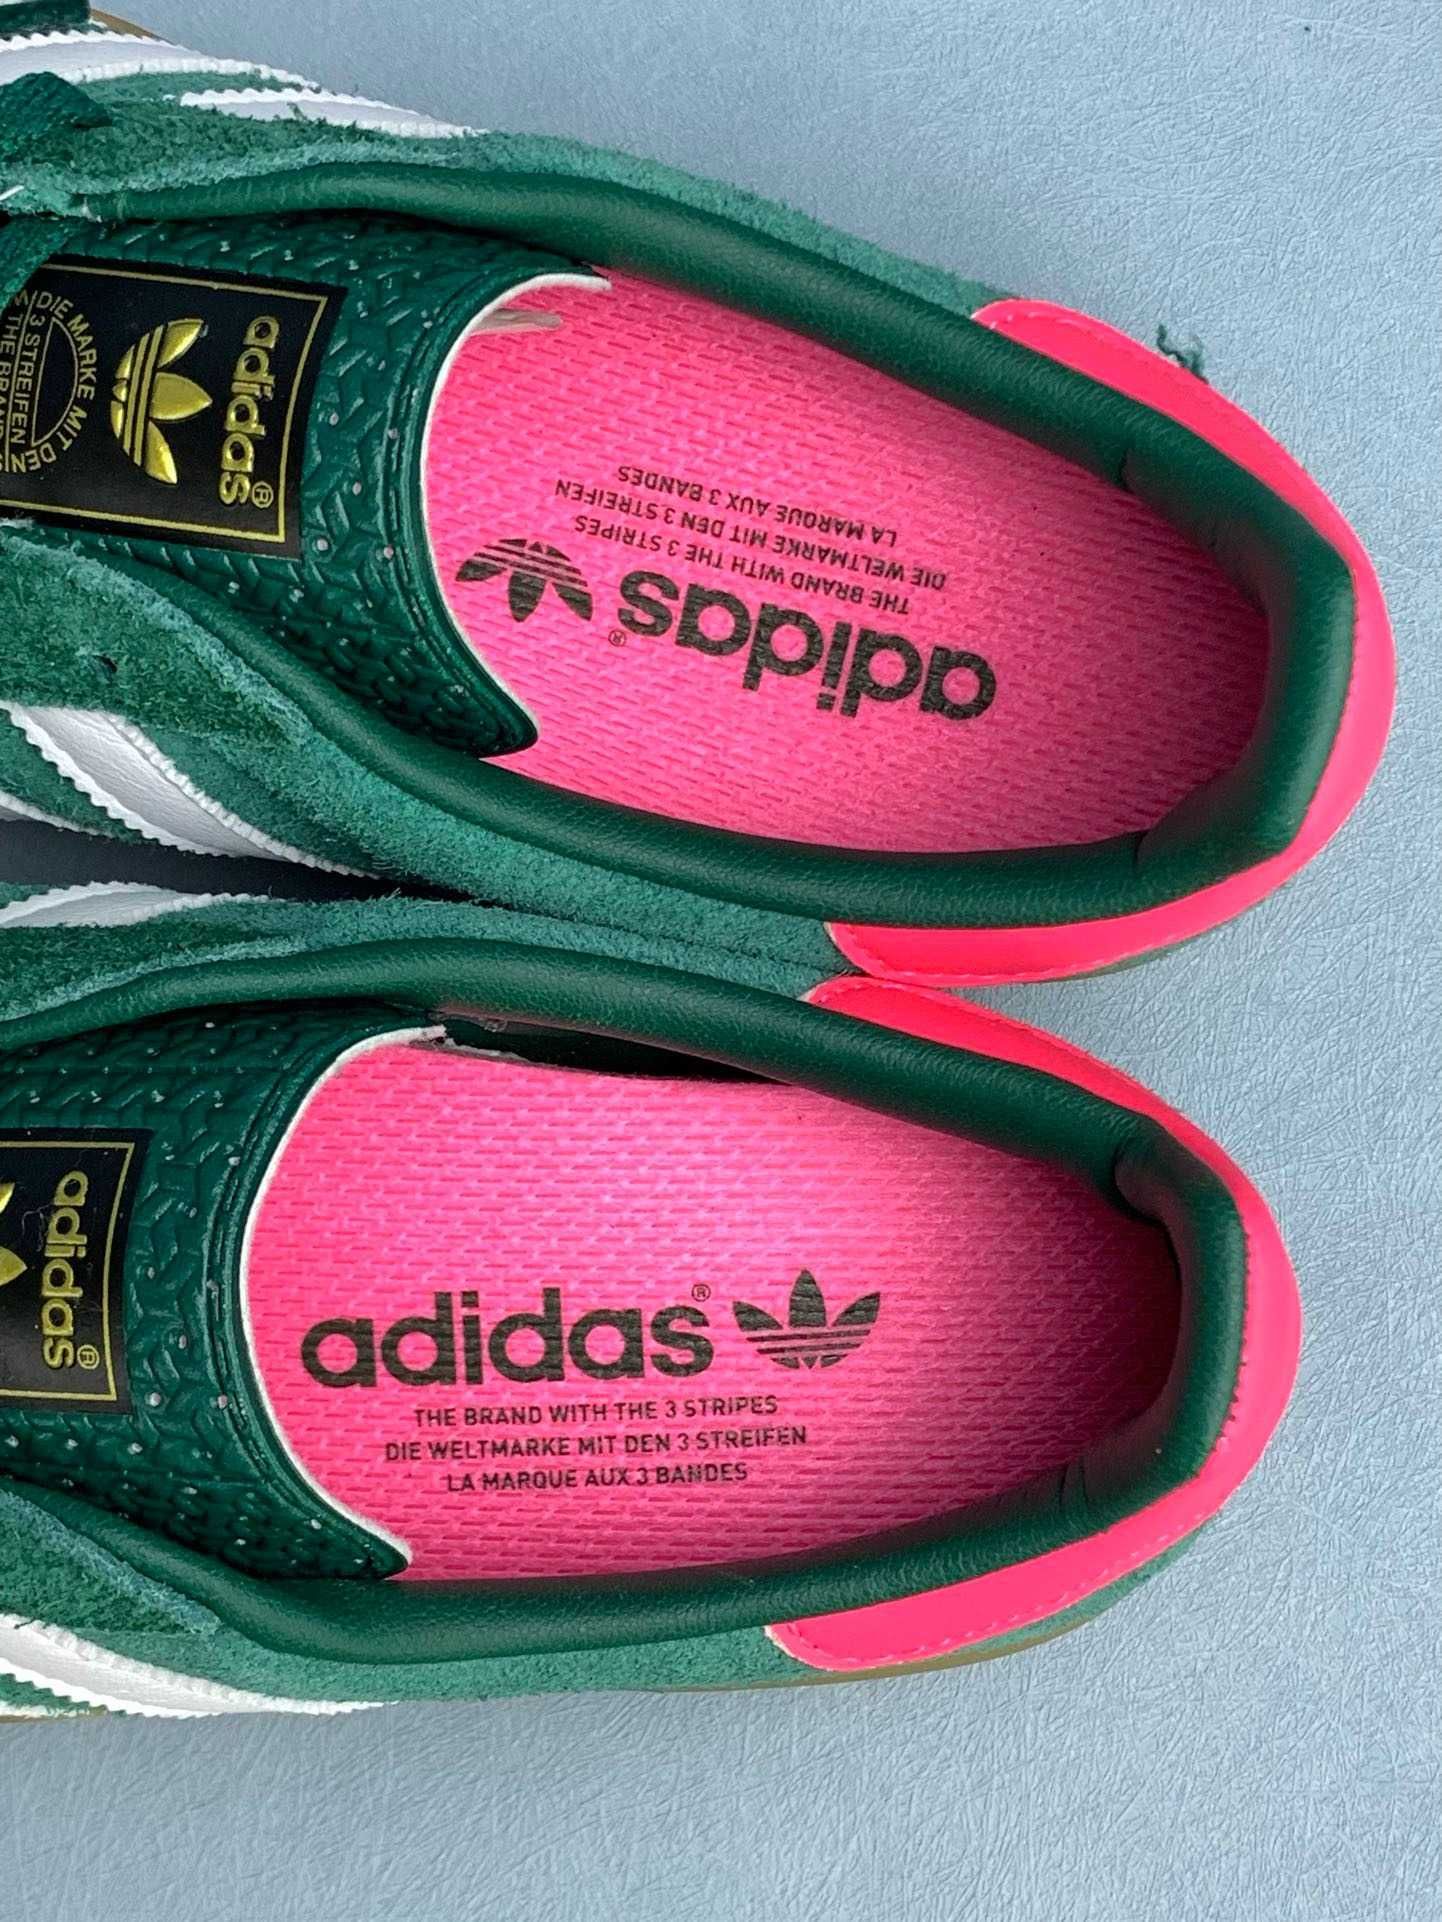 Adidas Gazelle Indoor Collegiate Green Pink Жіночі Адідас Газель